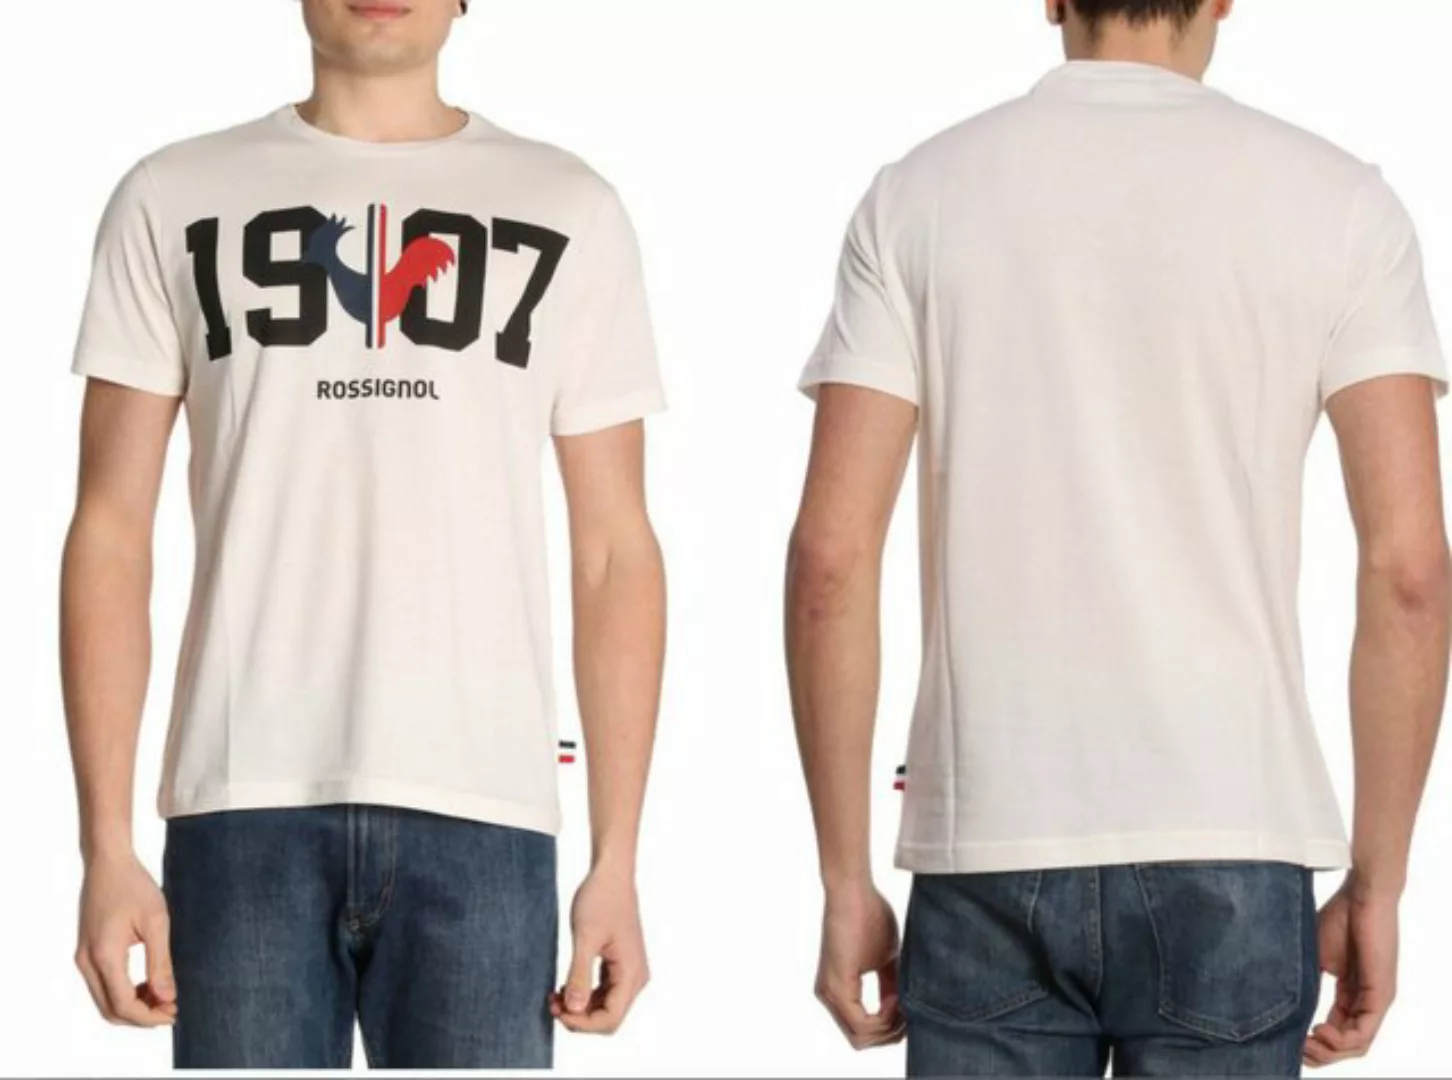 Rossignol T-Shirt ROSSIGNOL Mens 1917 Chamonix Print Cotton Luxury Fashion günstig online kaufen